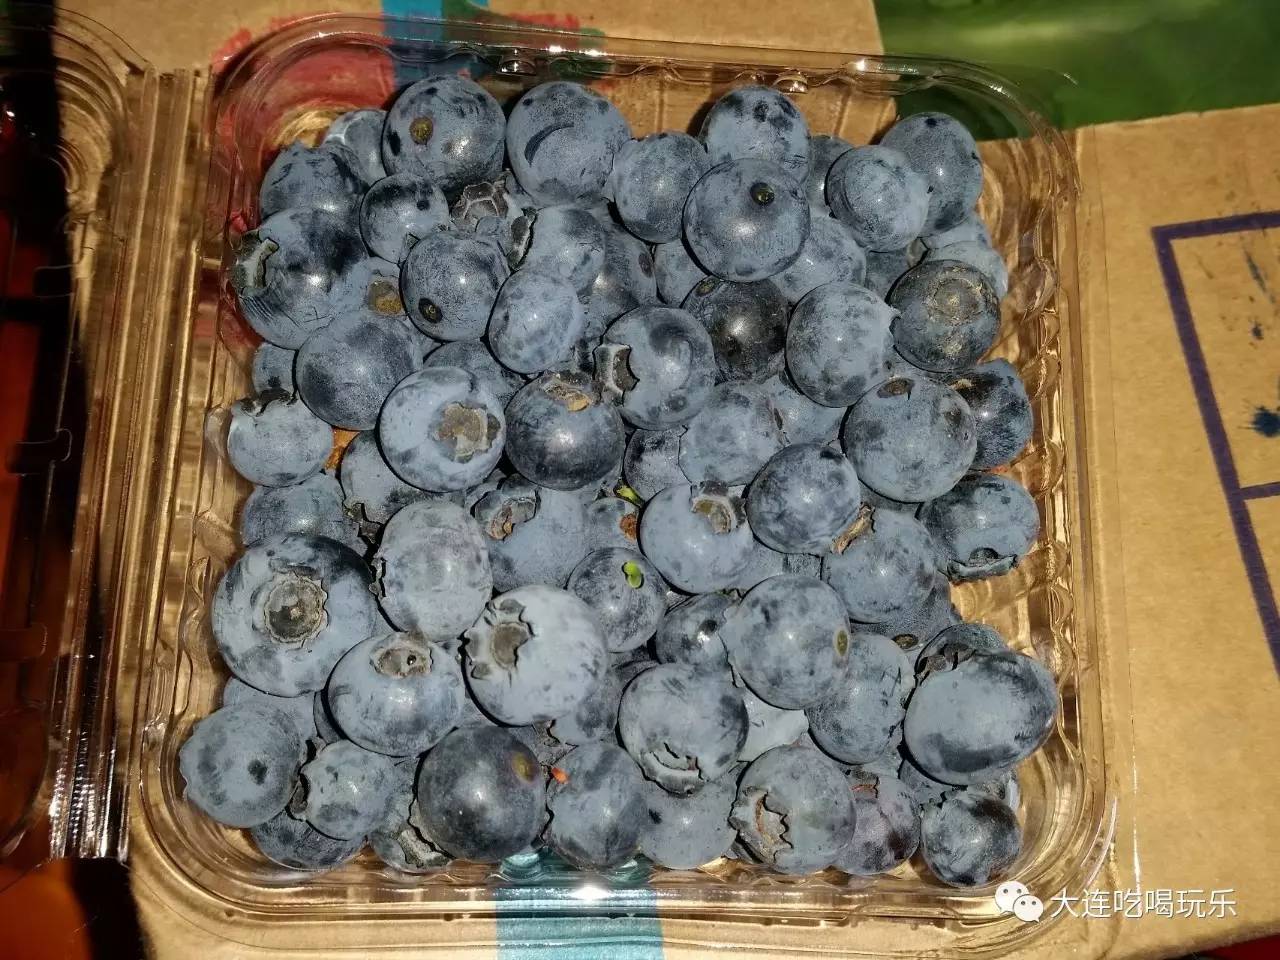 【端午节自驾游】蓝莓采摘，新鲜瓜果，带着孩子玩漂流咯！